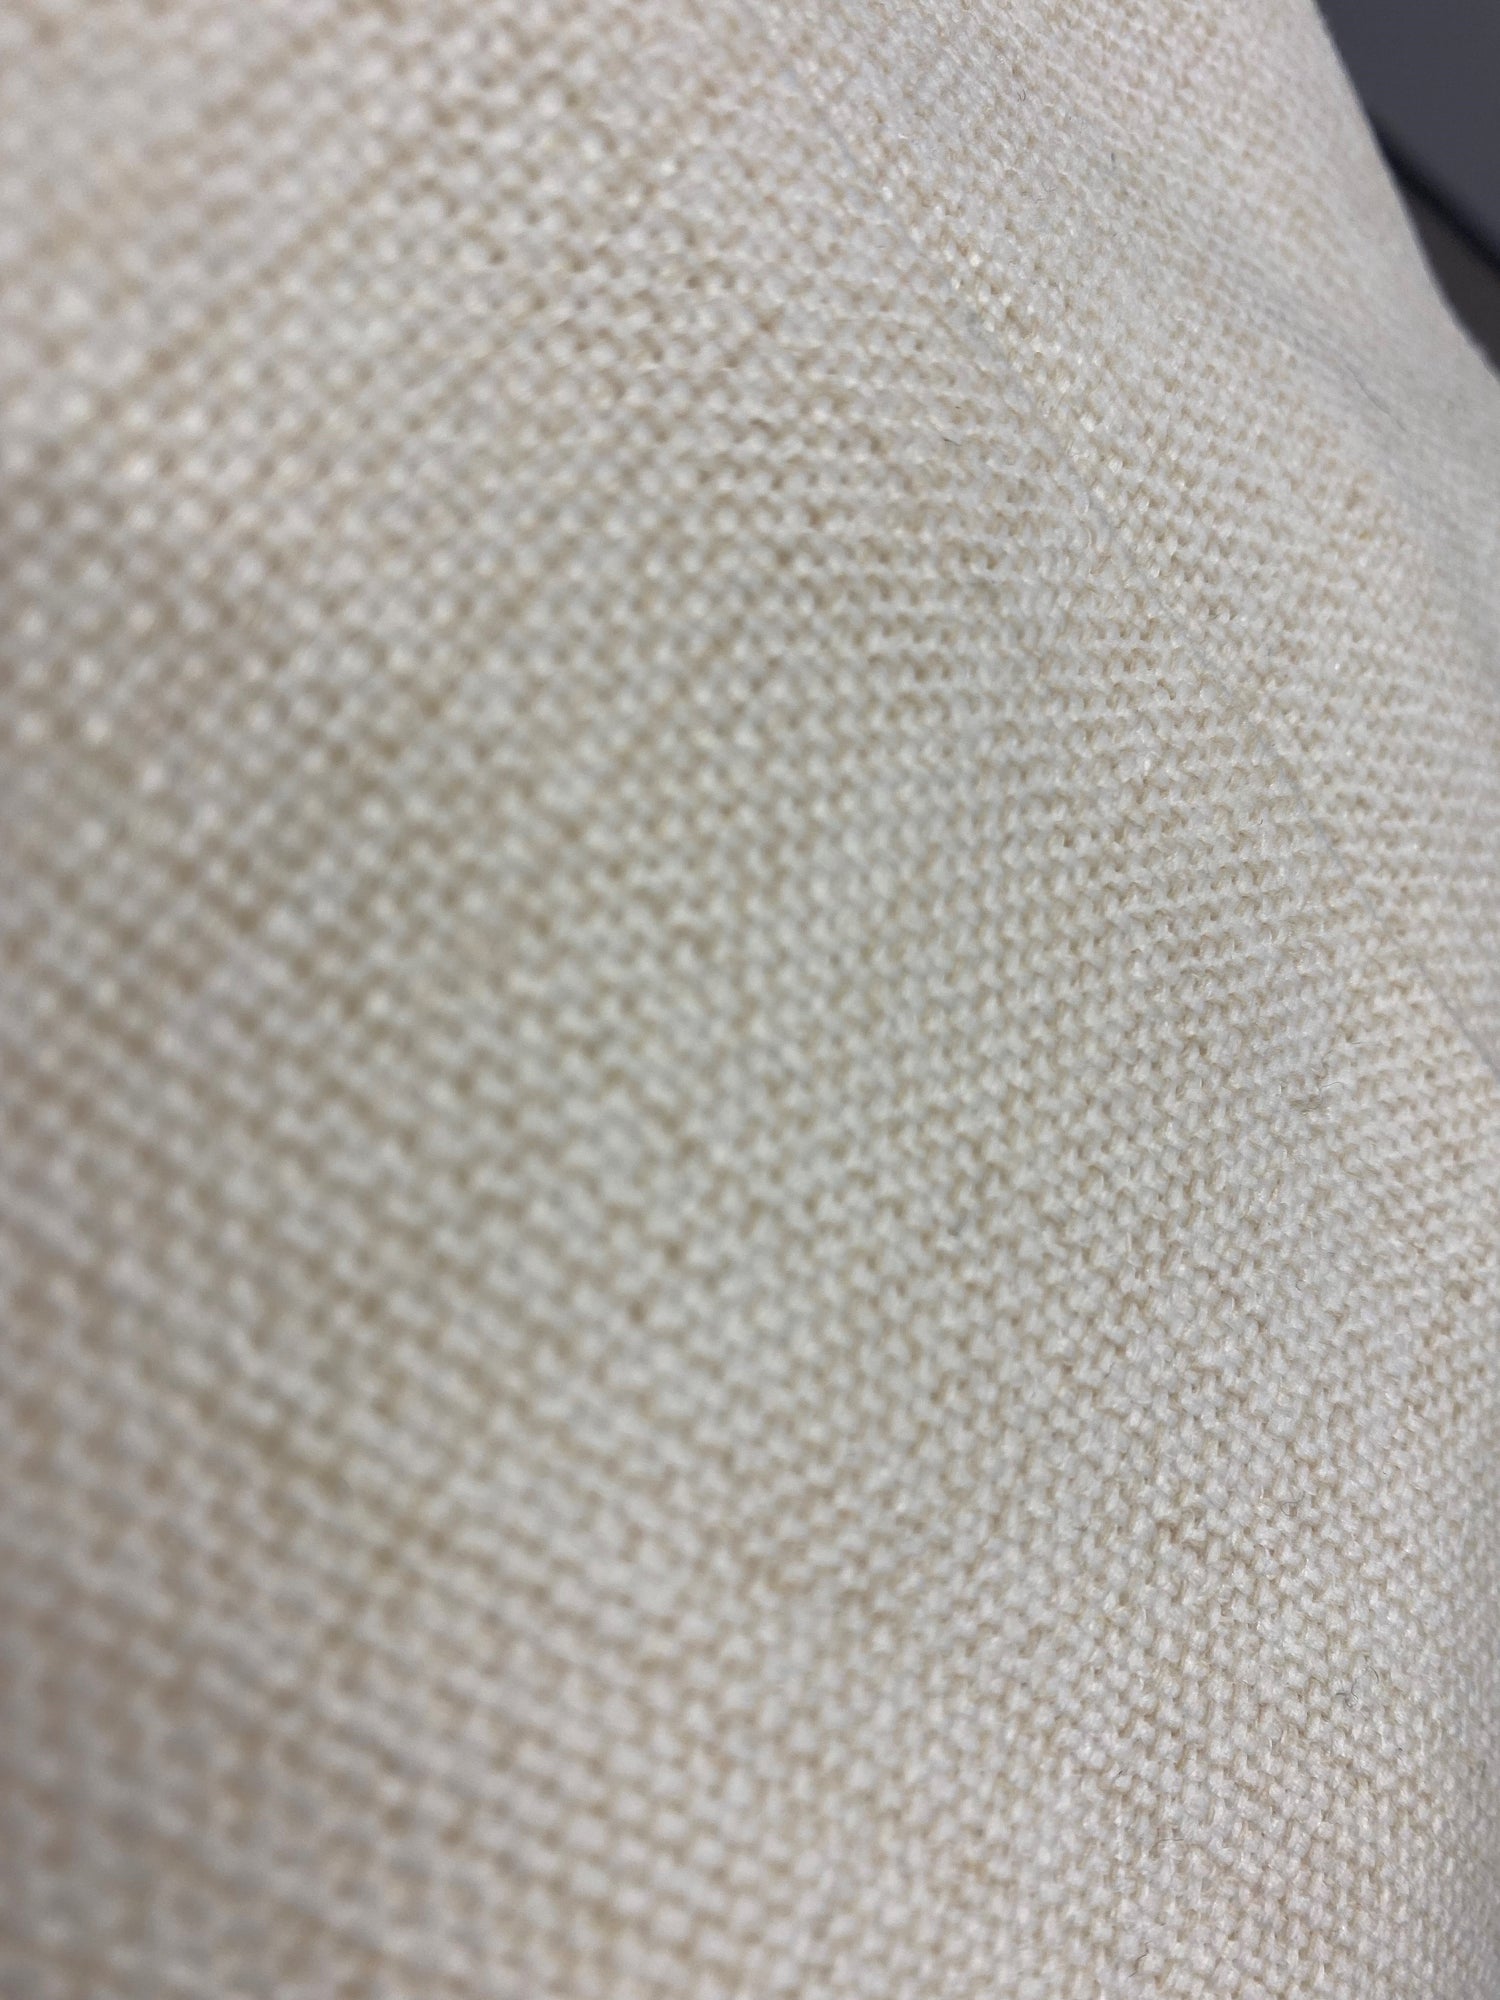 Linen texture